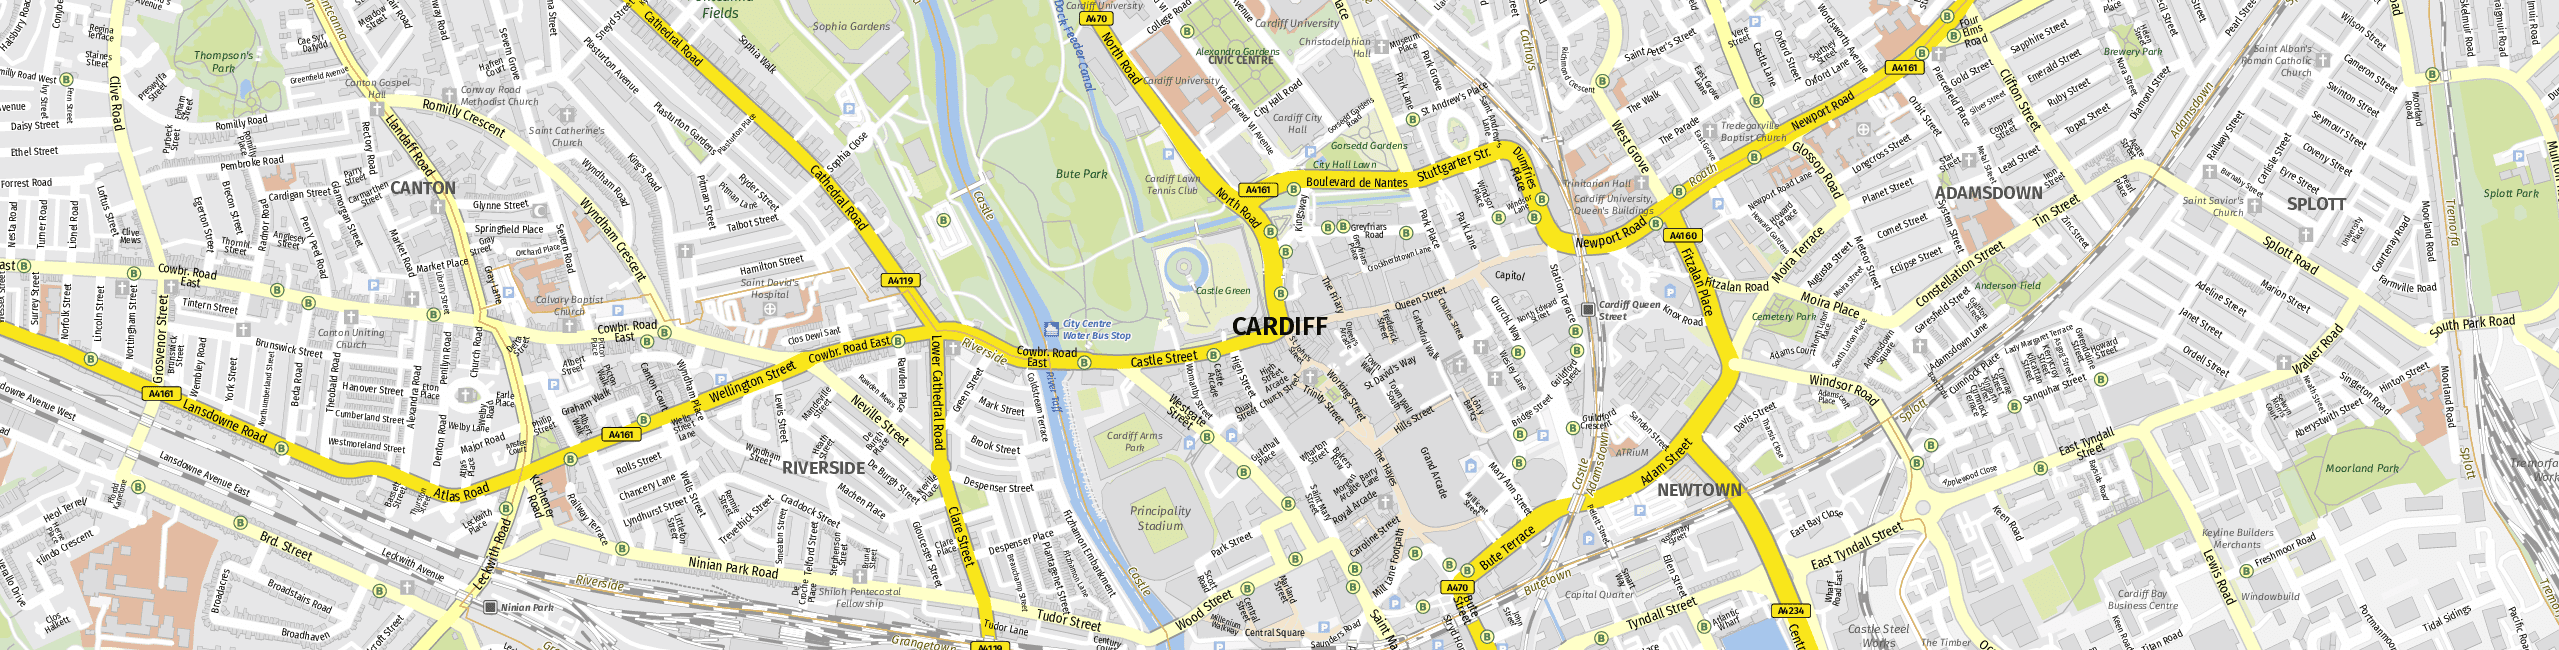 Stadtplan Cardiff zum Downloaden.